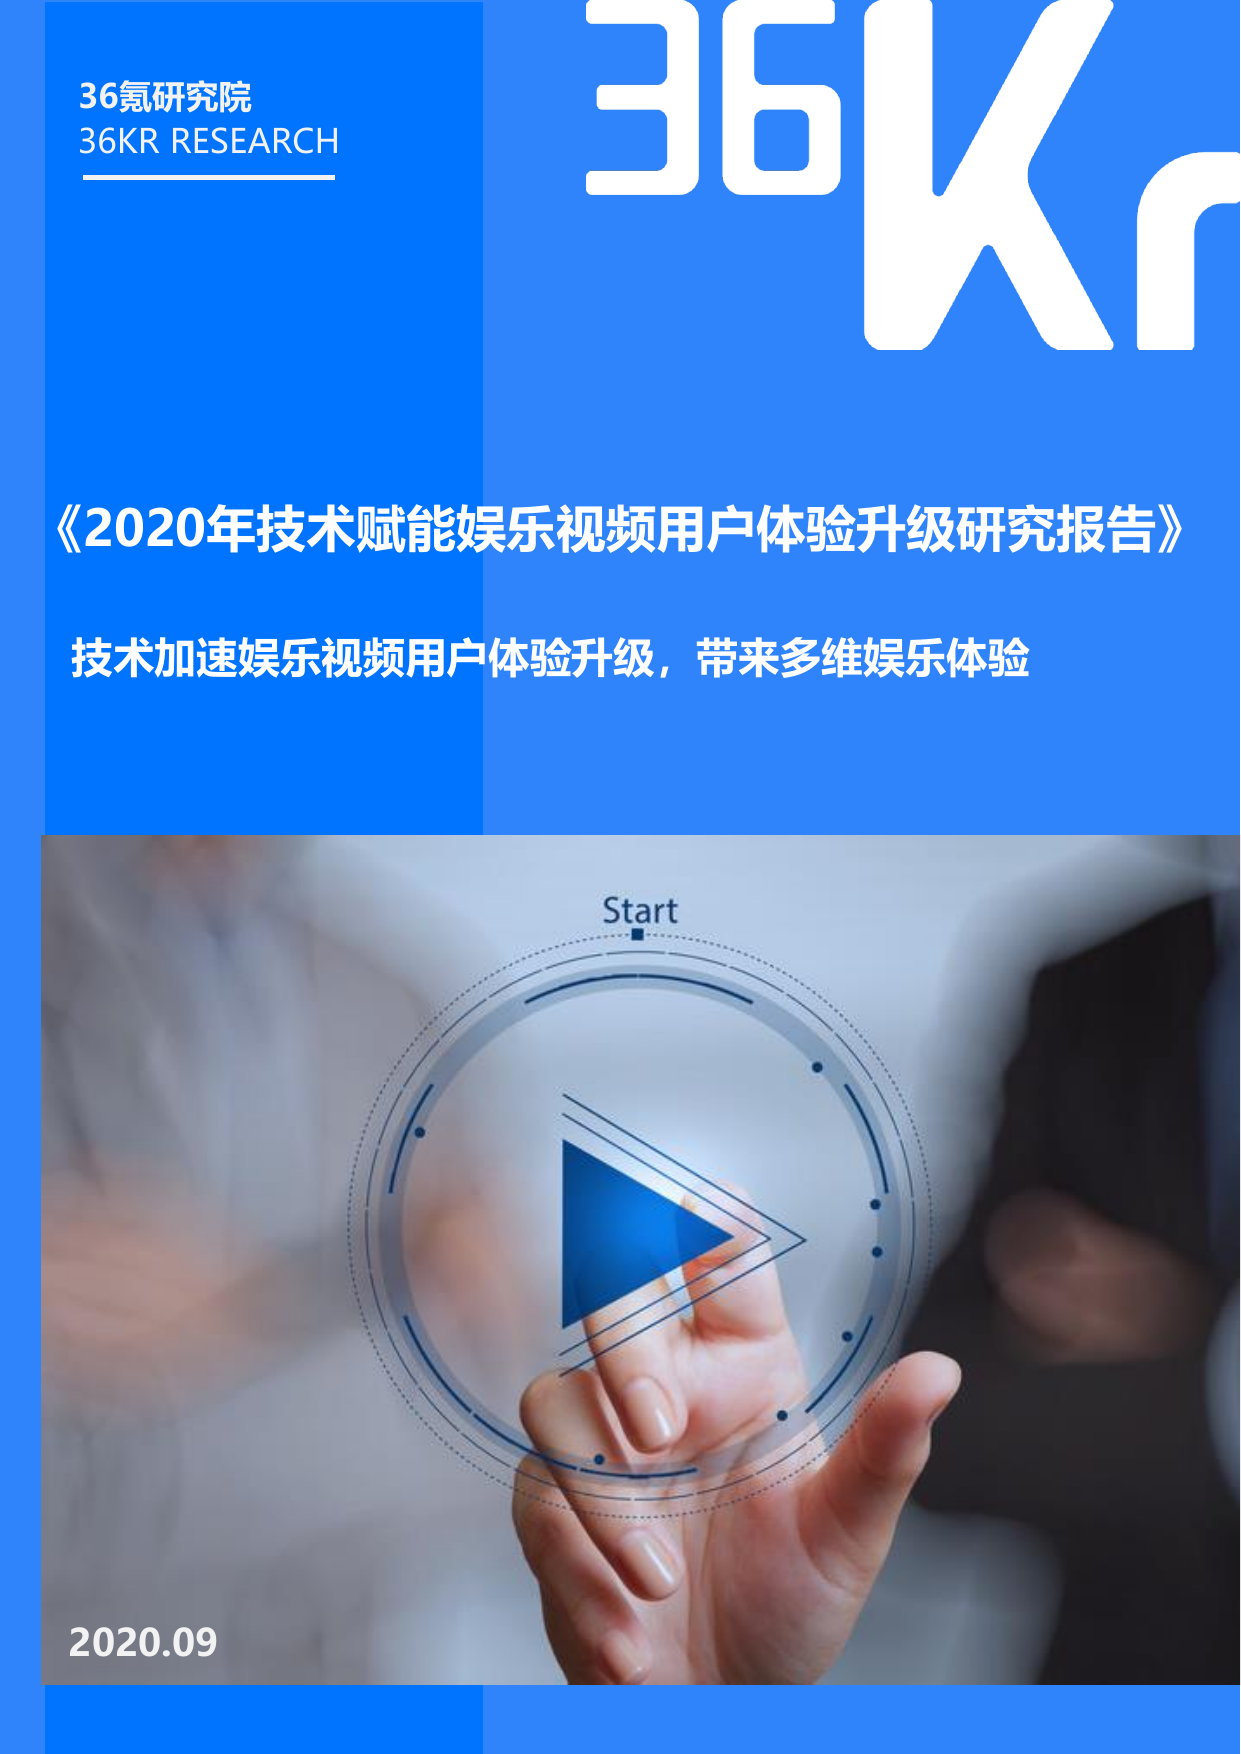 36Kr-2020技术赋能娱乐视频用户体验升级研究报告